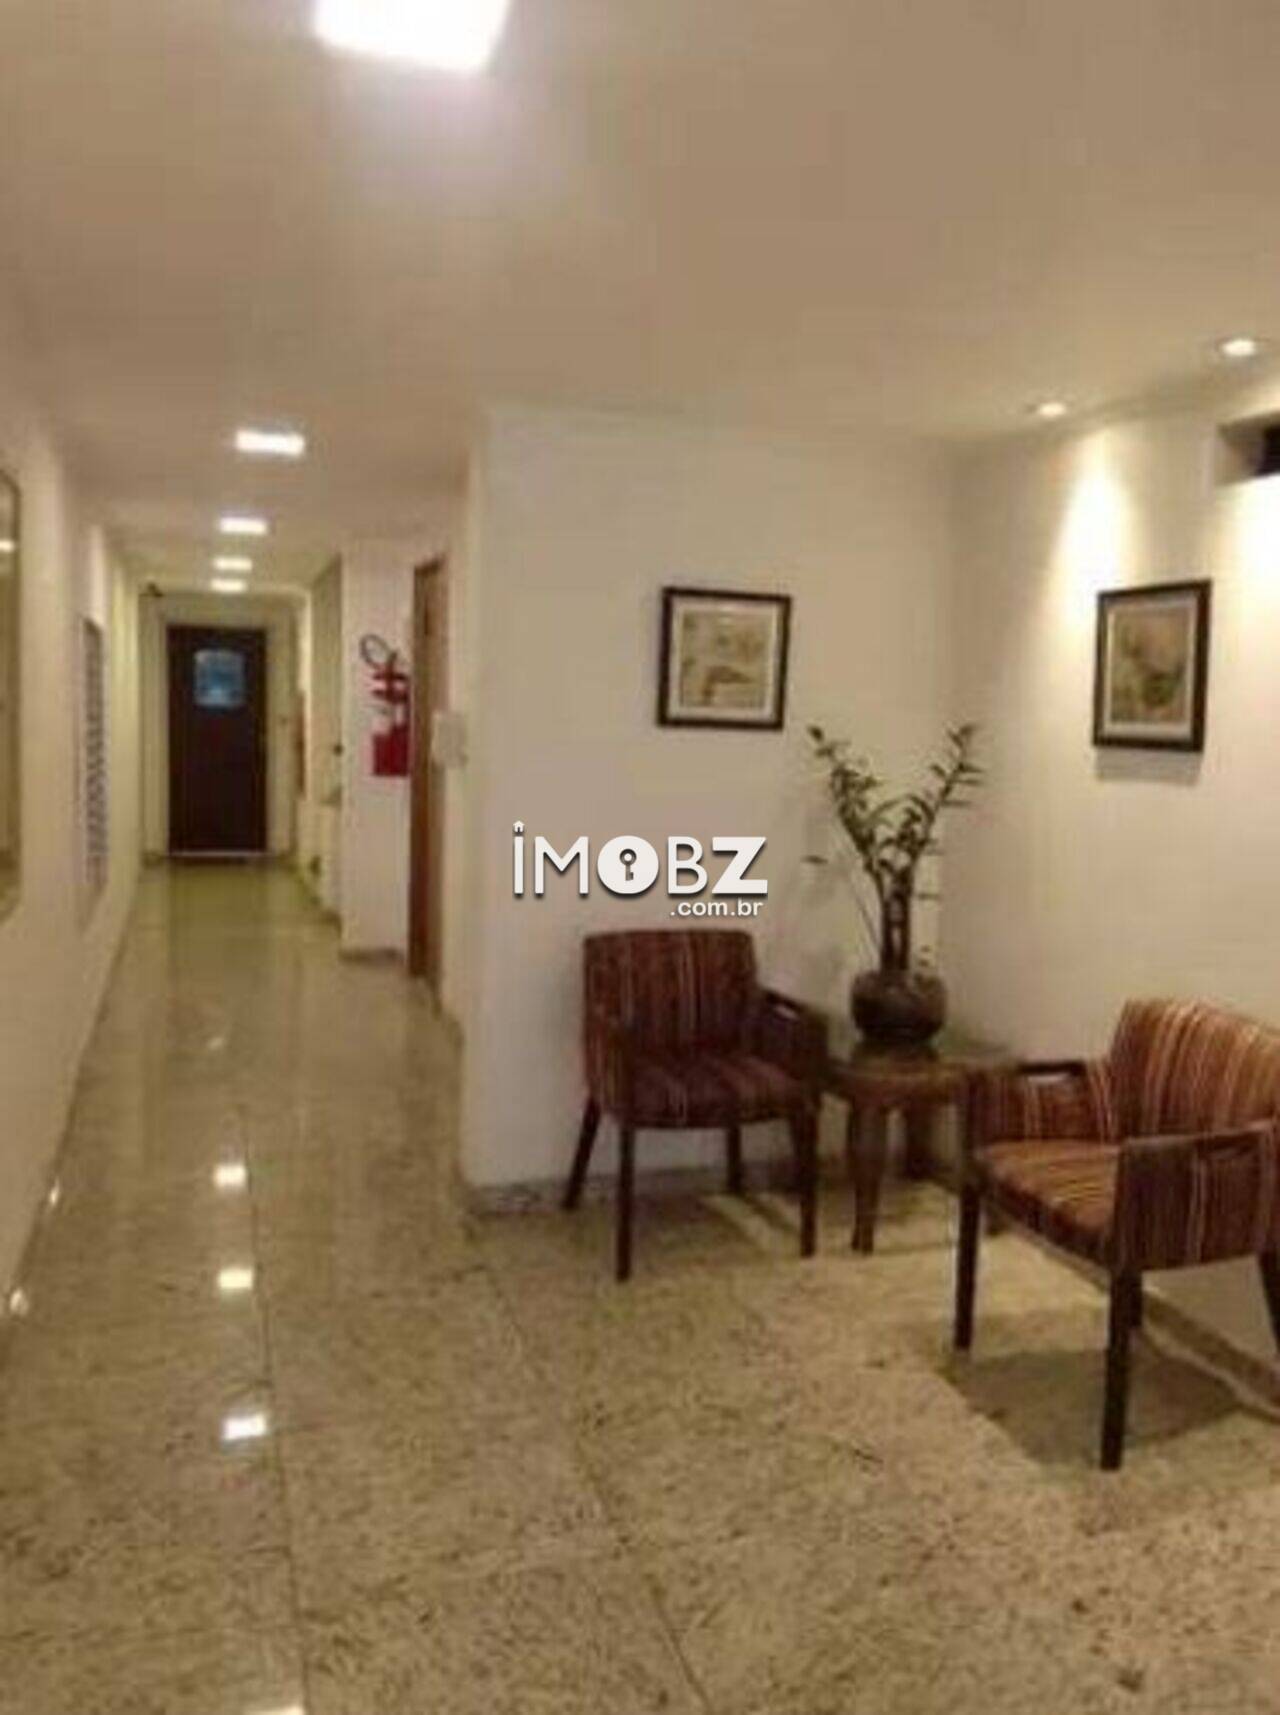 [DESTAQUE] Apartamento à venda no Condomínio Edifício Fradique Coutinho -   R. Fradique Coutinho, 238 - Vila Madalena - São Paulo - SP - CEP 05433-011